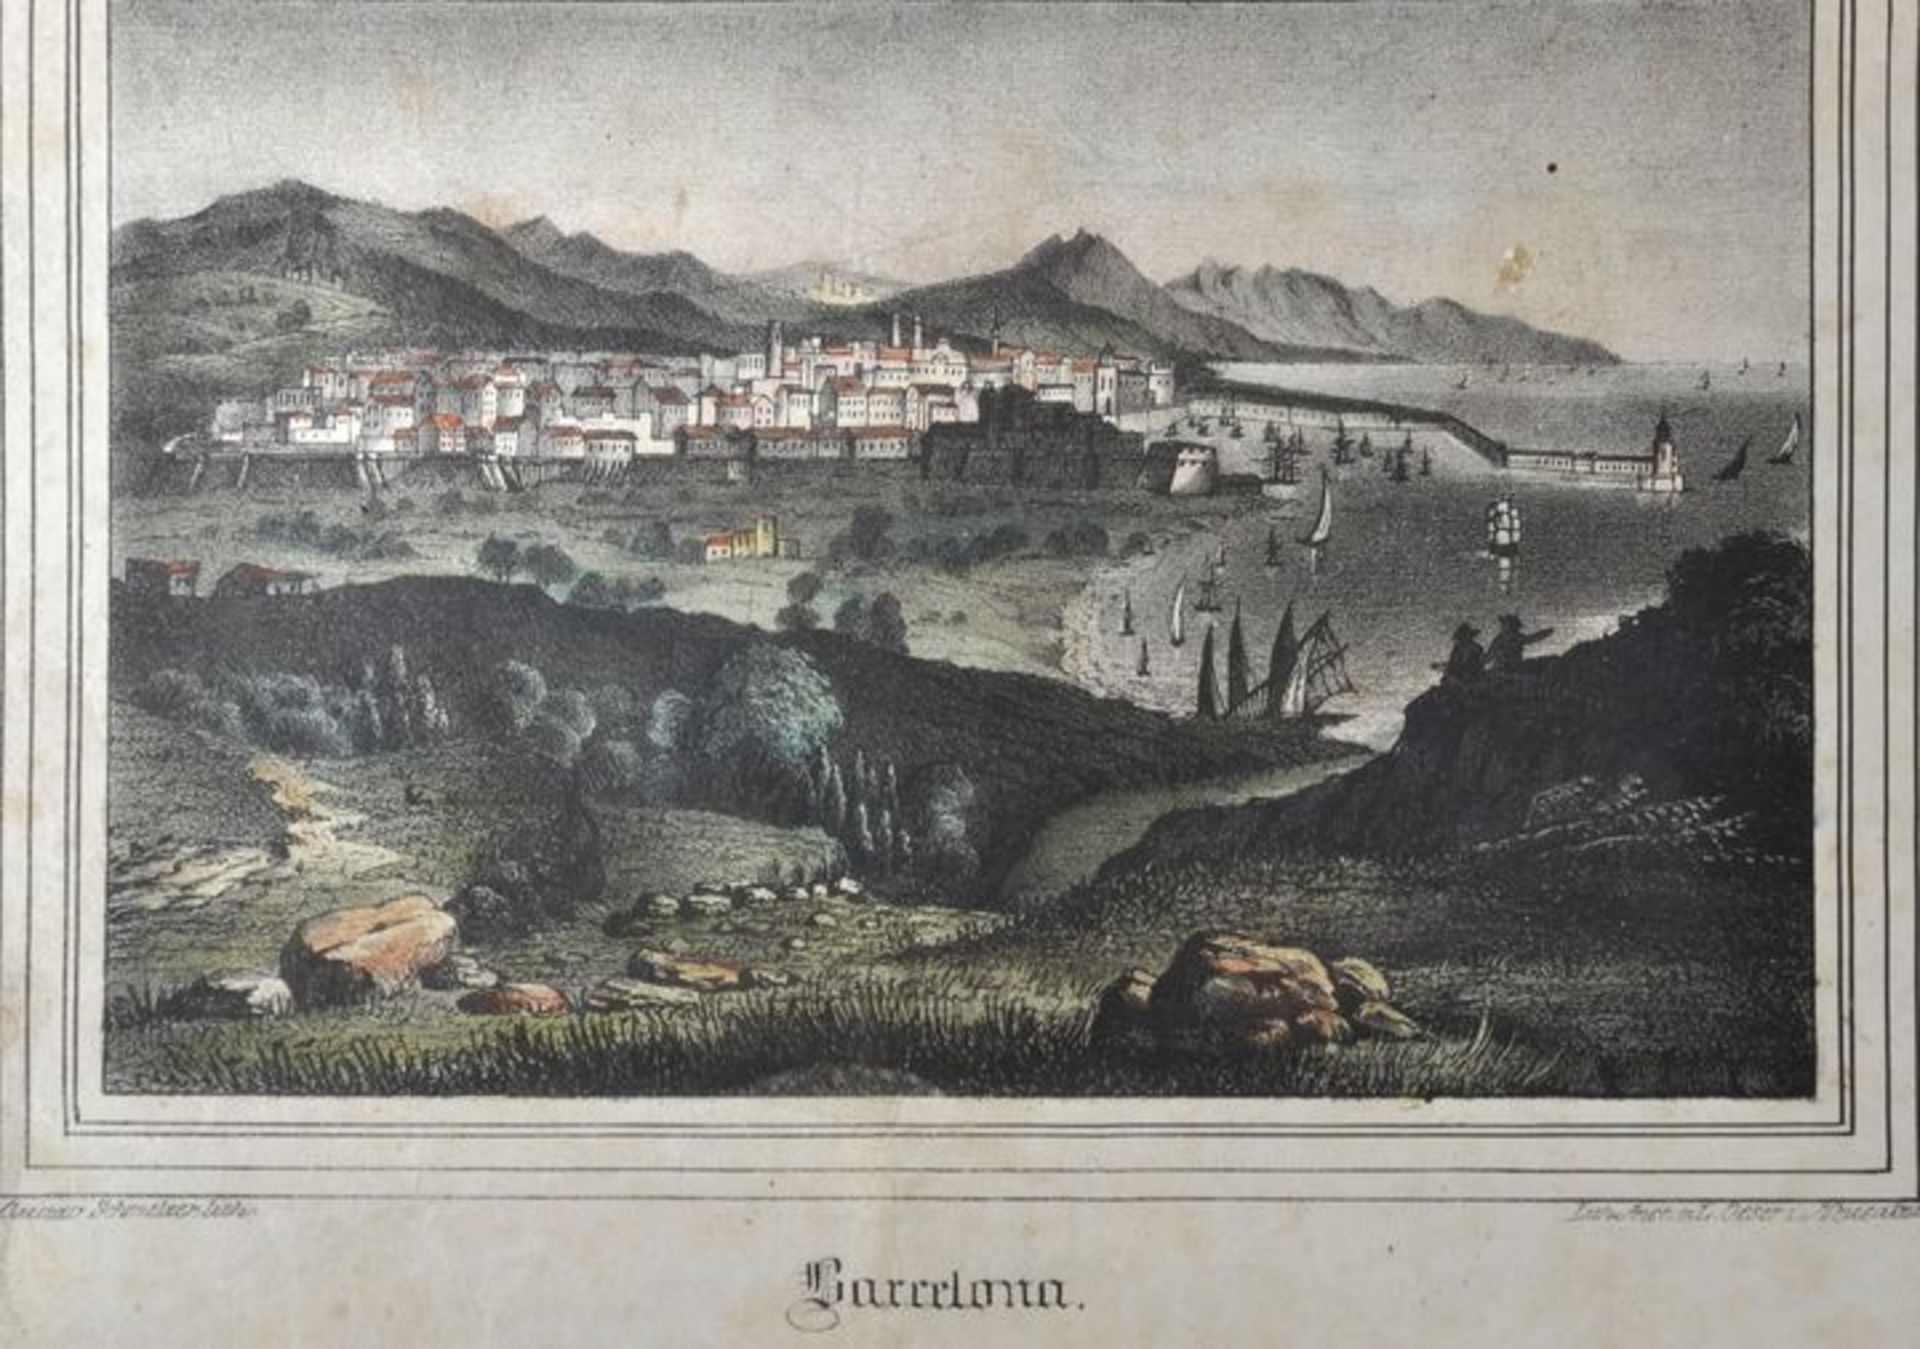 Barcelona. 27 Ansichten. a) Vedute. Lithographie von Gustav Schmelzer, um 1850. Altkoloriert. 10,5 x